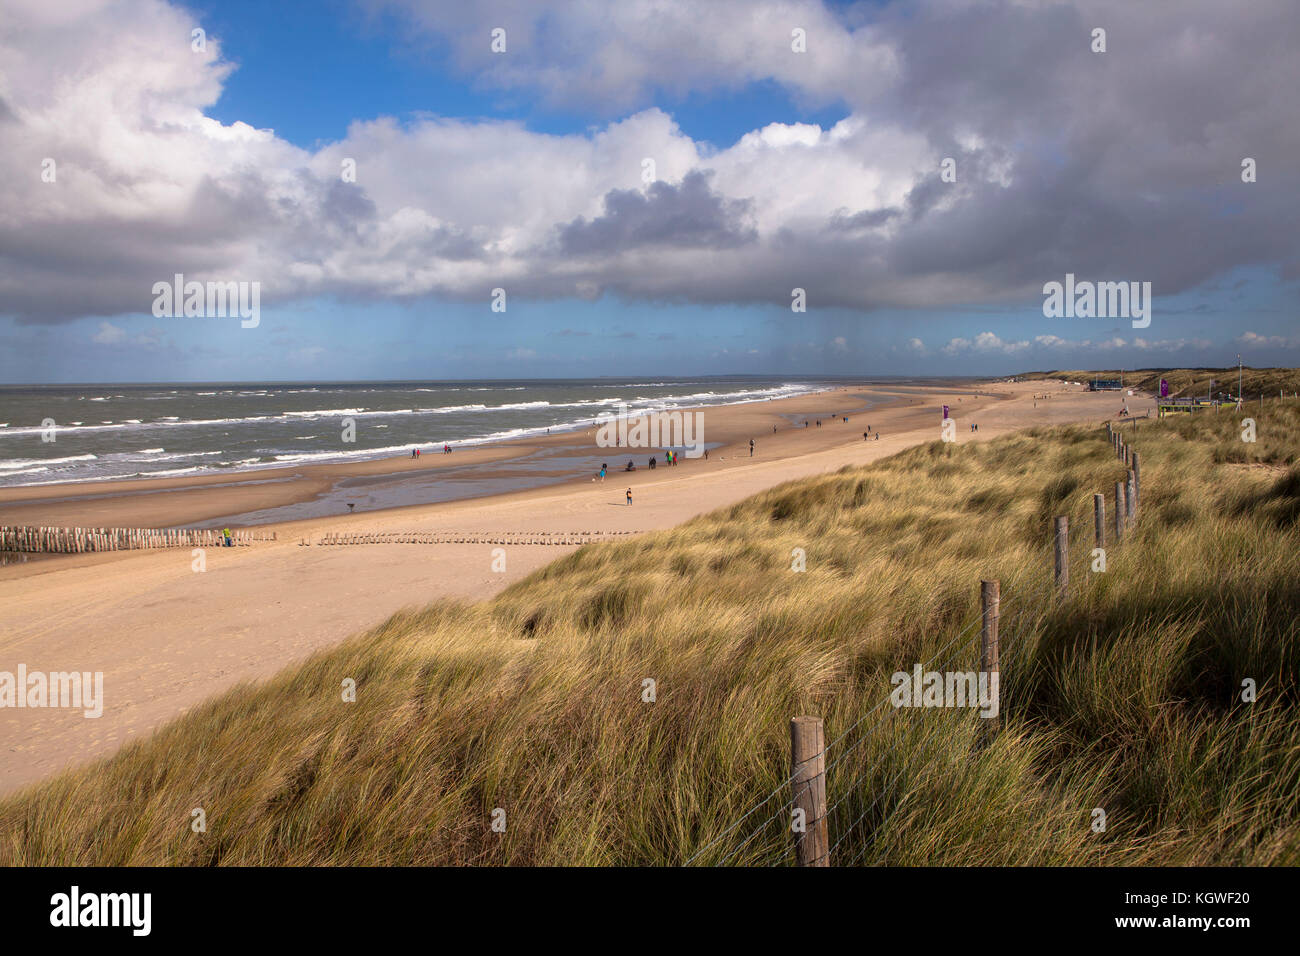 Pays-Bas, à la plage d'Oostkapelle sur la péninsule de Walcheren. Niederlande, Am Strand von Oostkapelle auf Walcheren. Banque D'Images